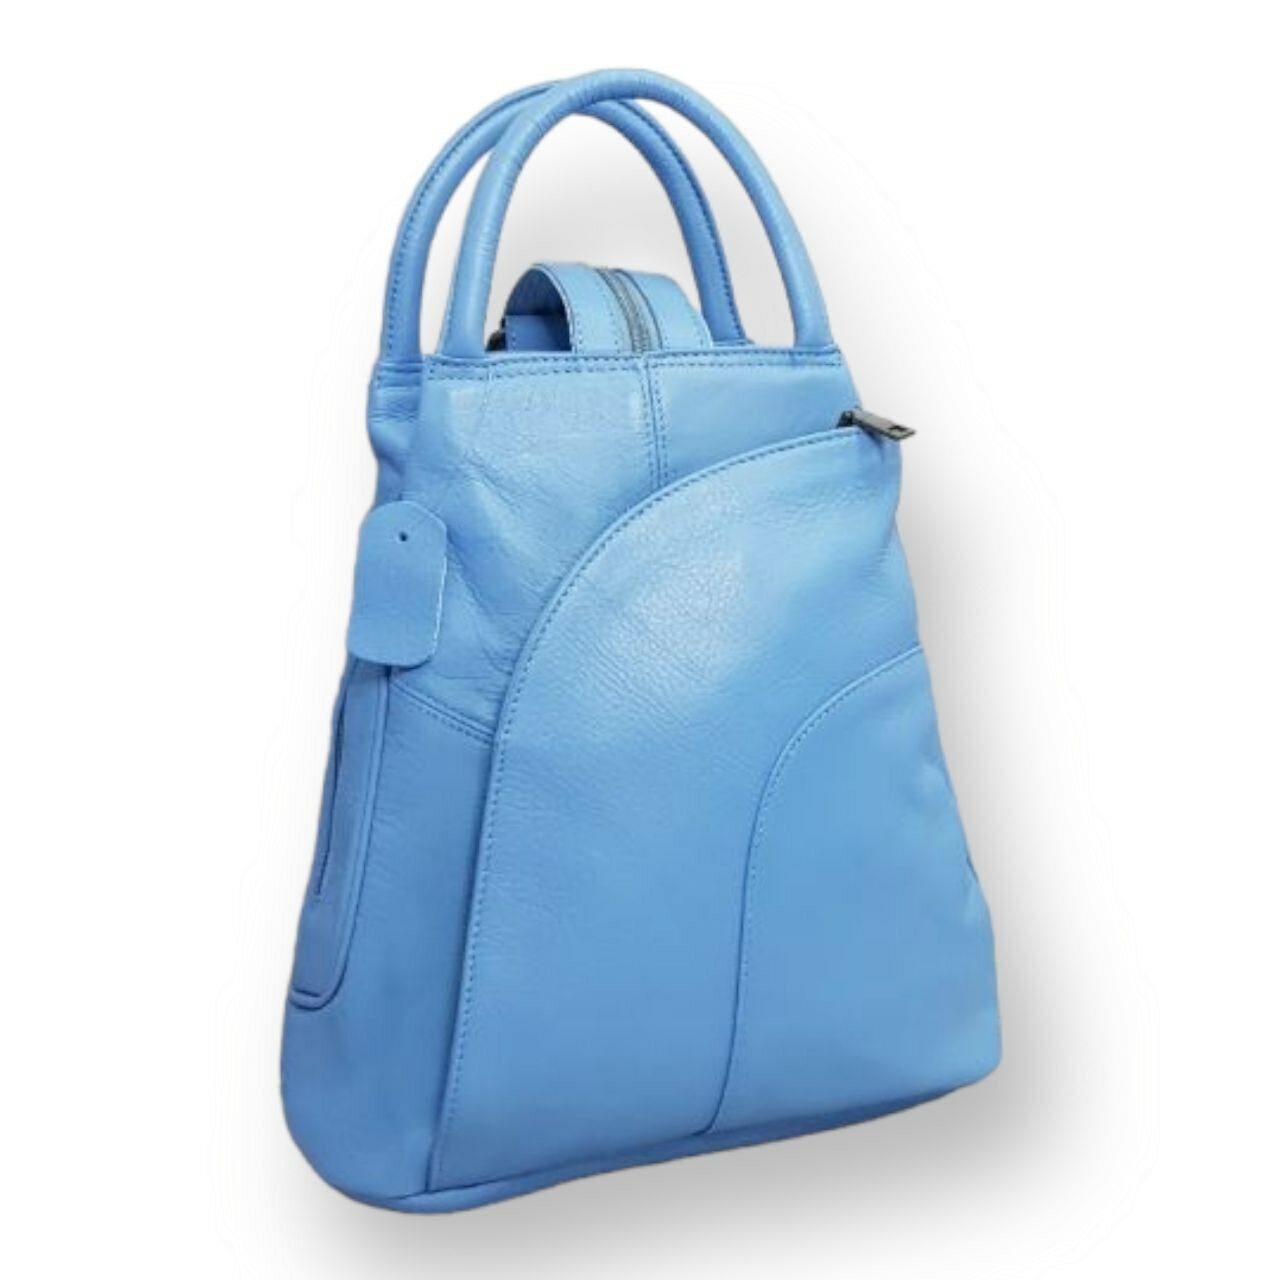 Рюкзак женский, маленький, кожаный рюкзак, городской, рюкзак-трансформер, голубой